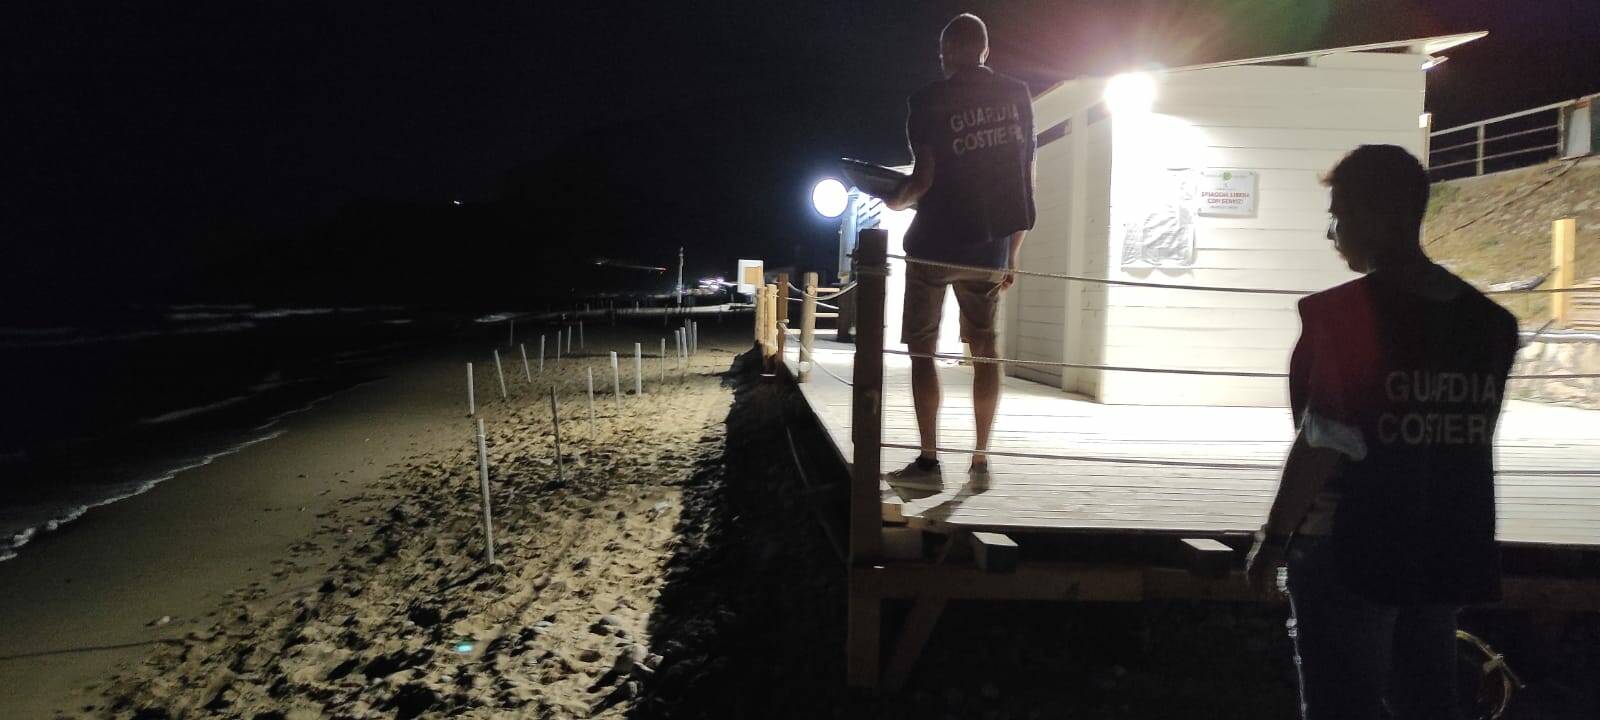 Gaeta, blitz notturno della Guardia Costiera: 2 spiagge libere occupate con attrezzature balneari